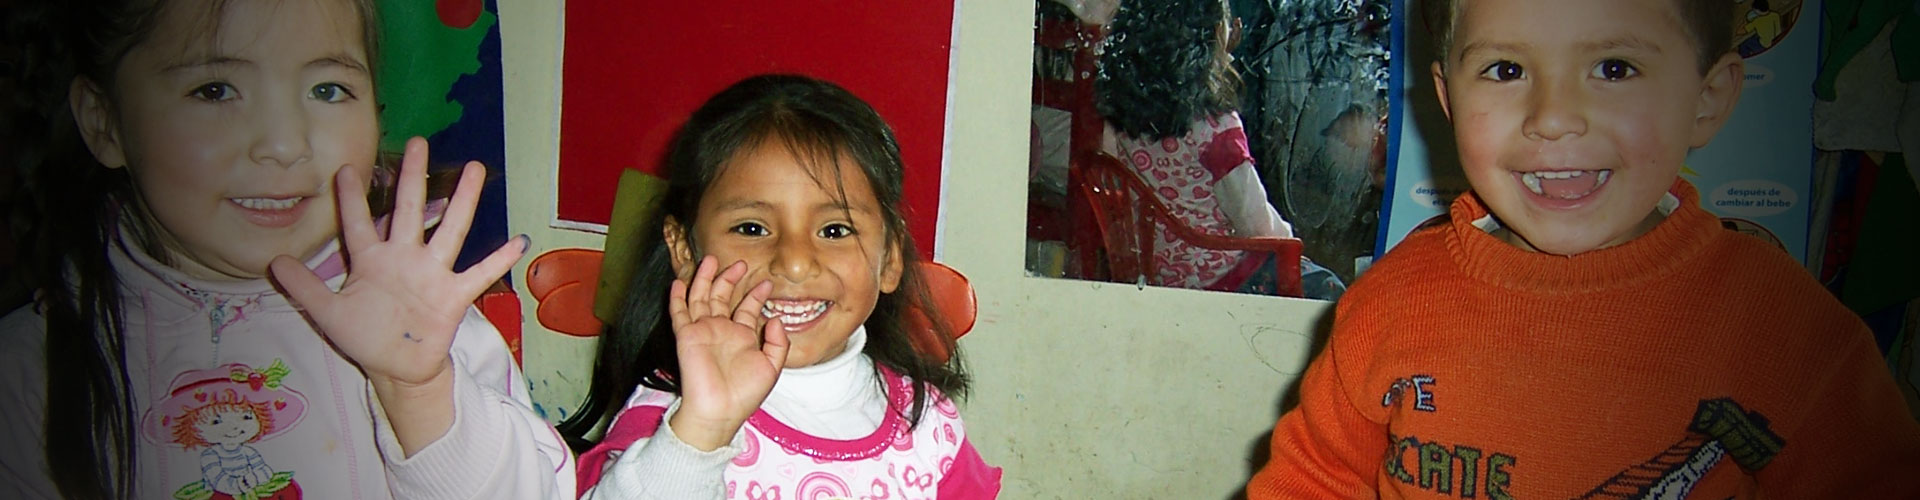 Volunteer work in Day Care Center At Cusco, Peru